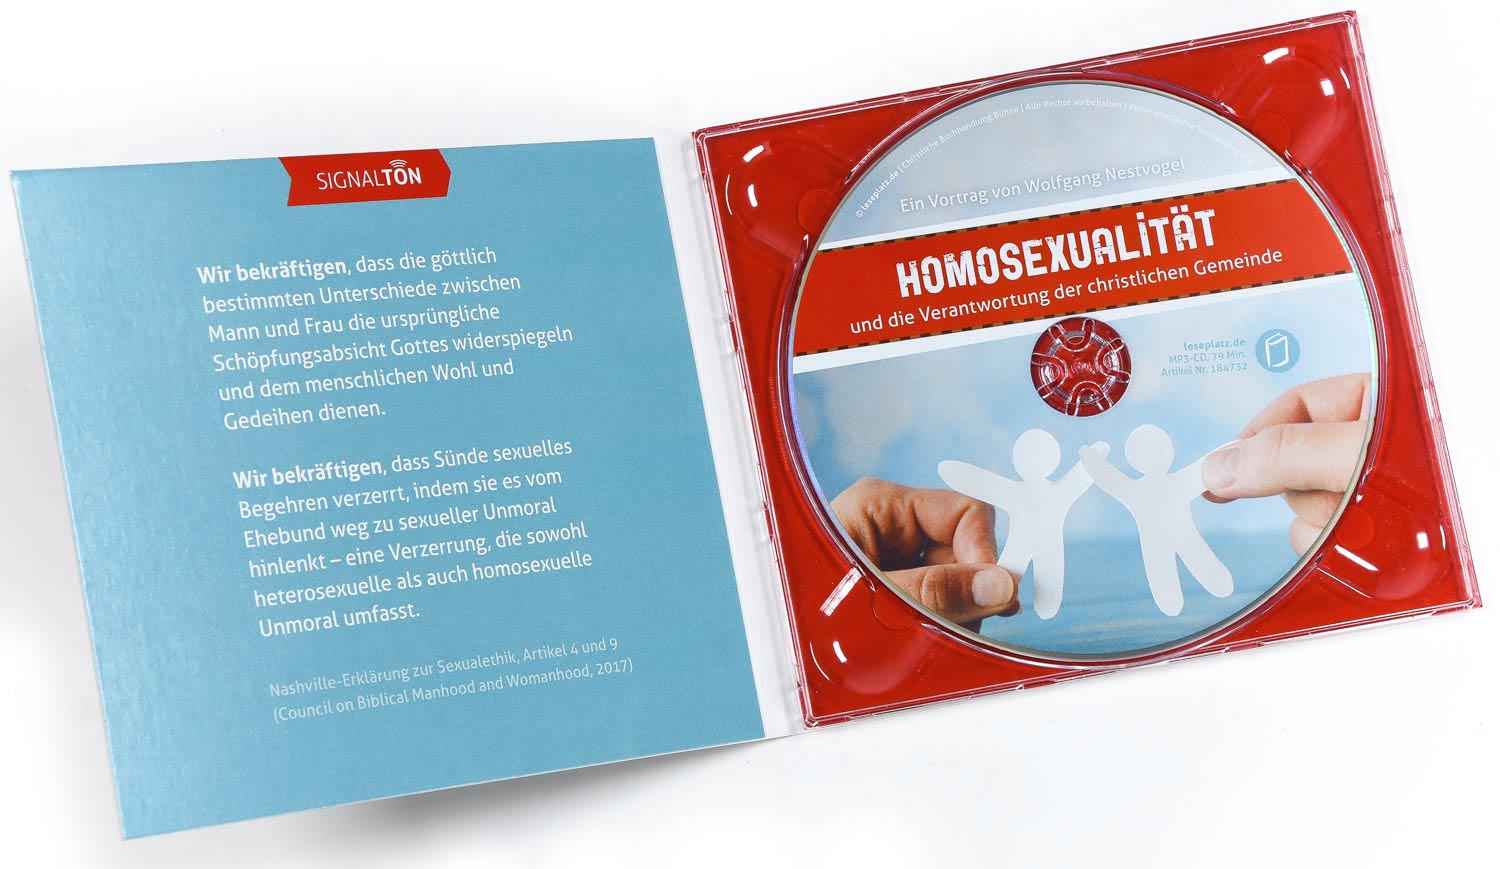 Homosexualität - CD